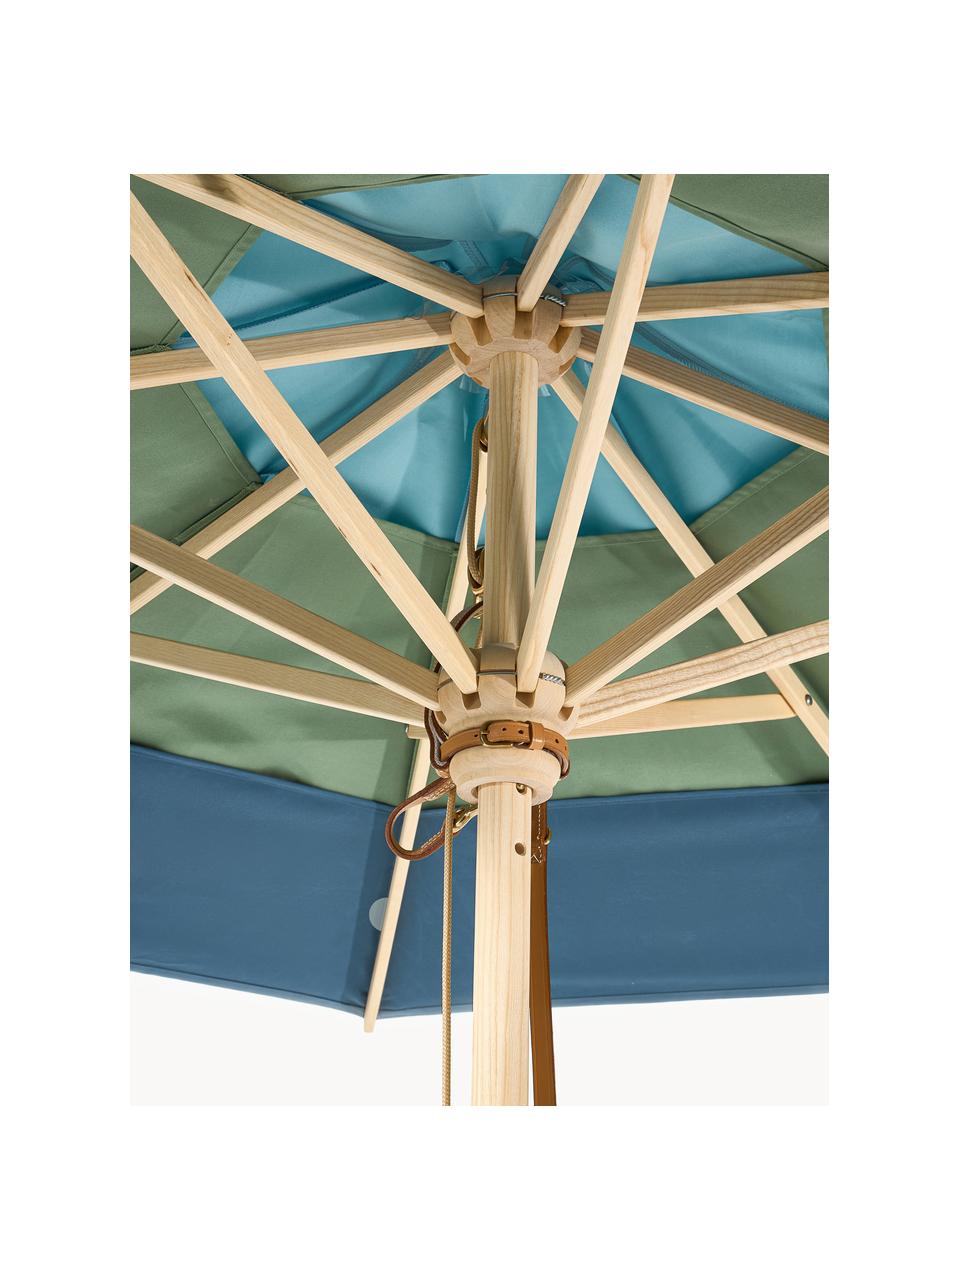 Kulatý slunečník Classic, různé velikosti, Odstíny modré, zelená, světlé dřevo, Ø 210 cm, V 251 cm